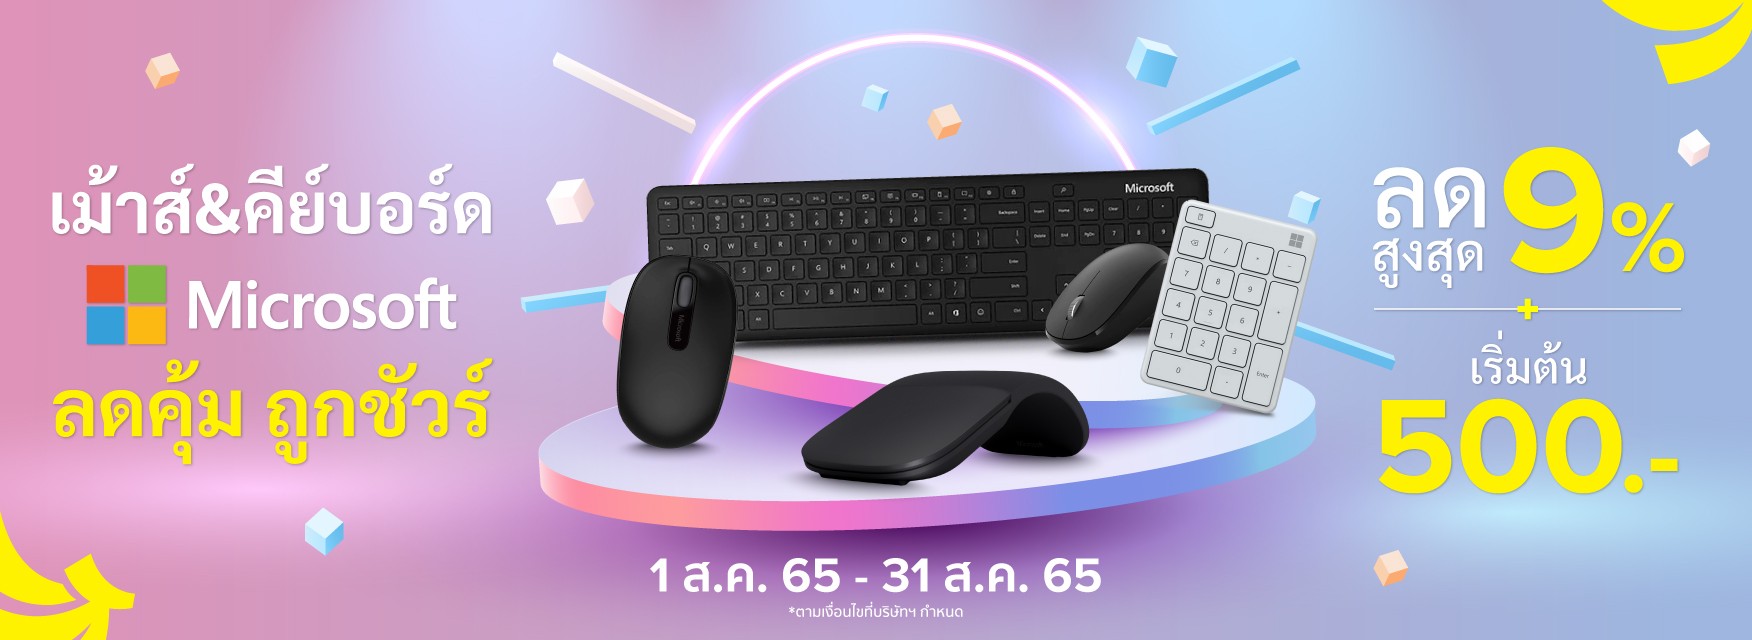 Microsoft Mouse & Keyboard เรียนรู้แบบไม่รู้จบ